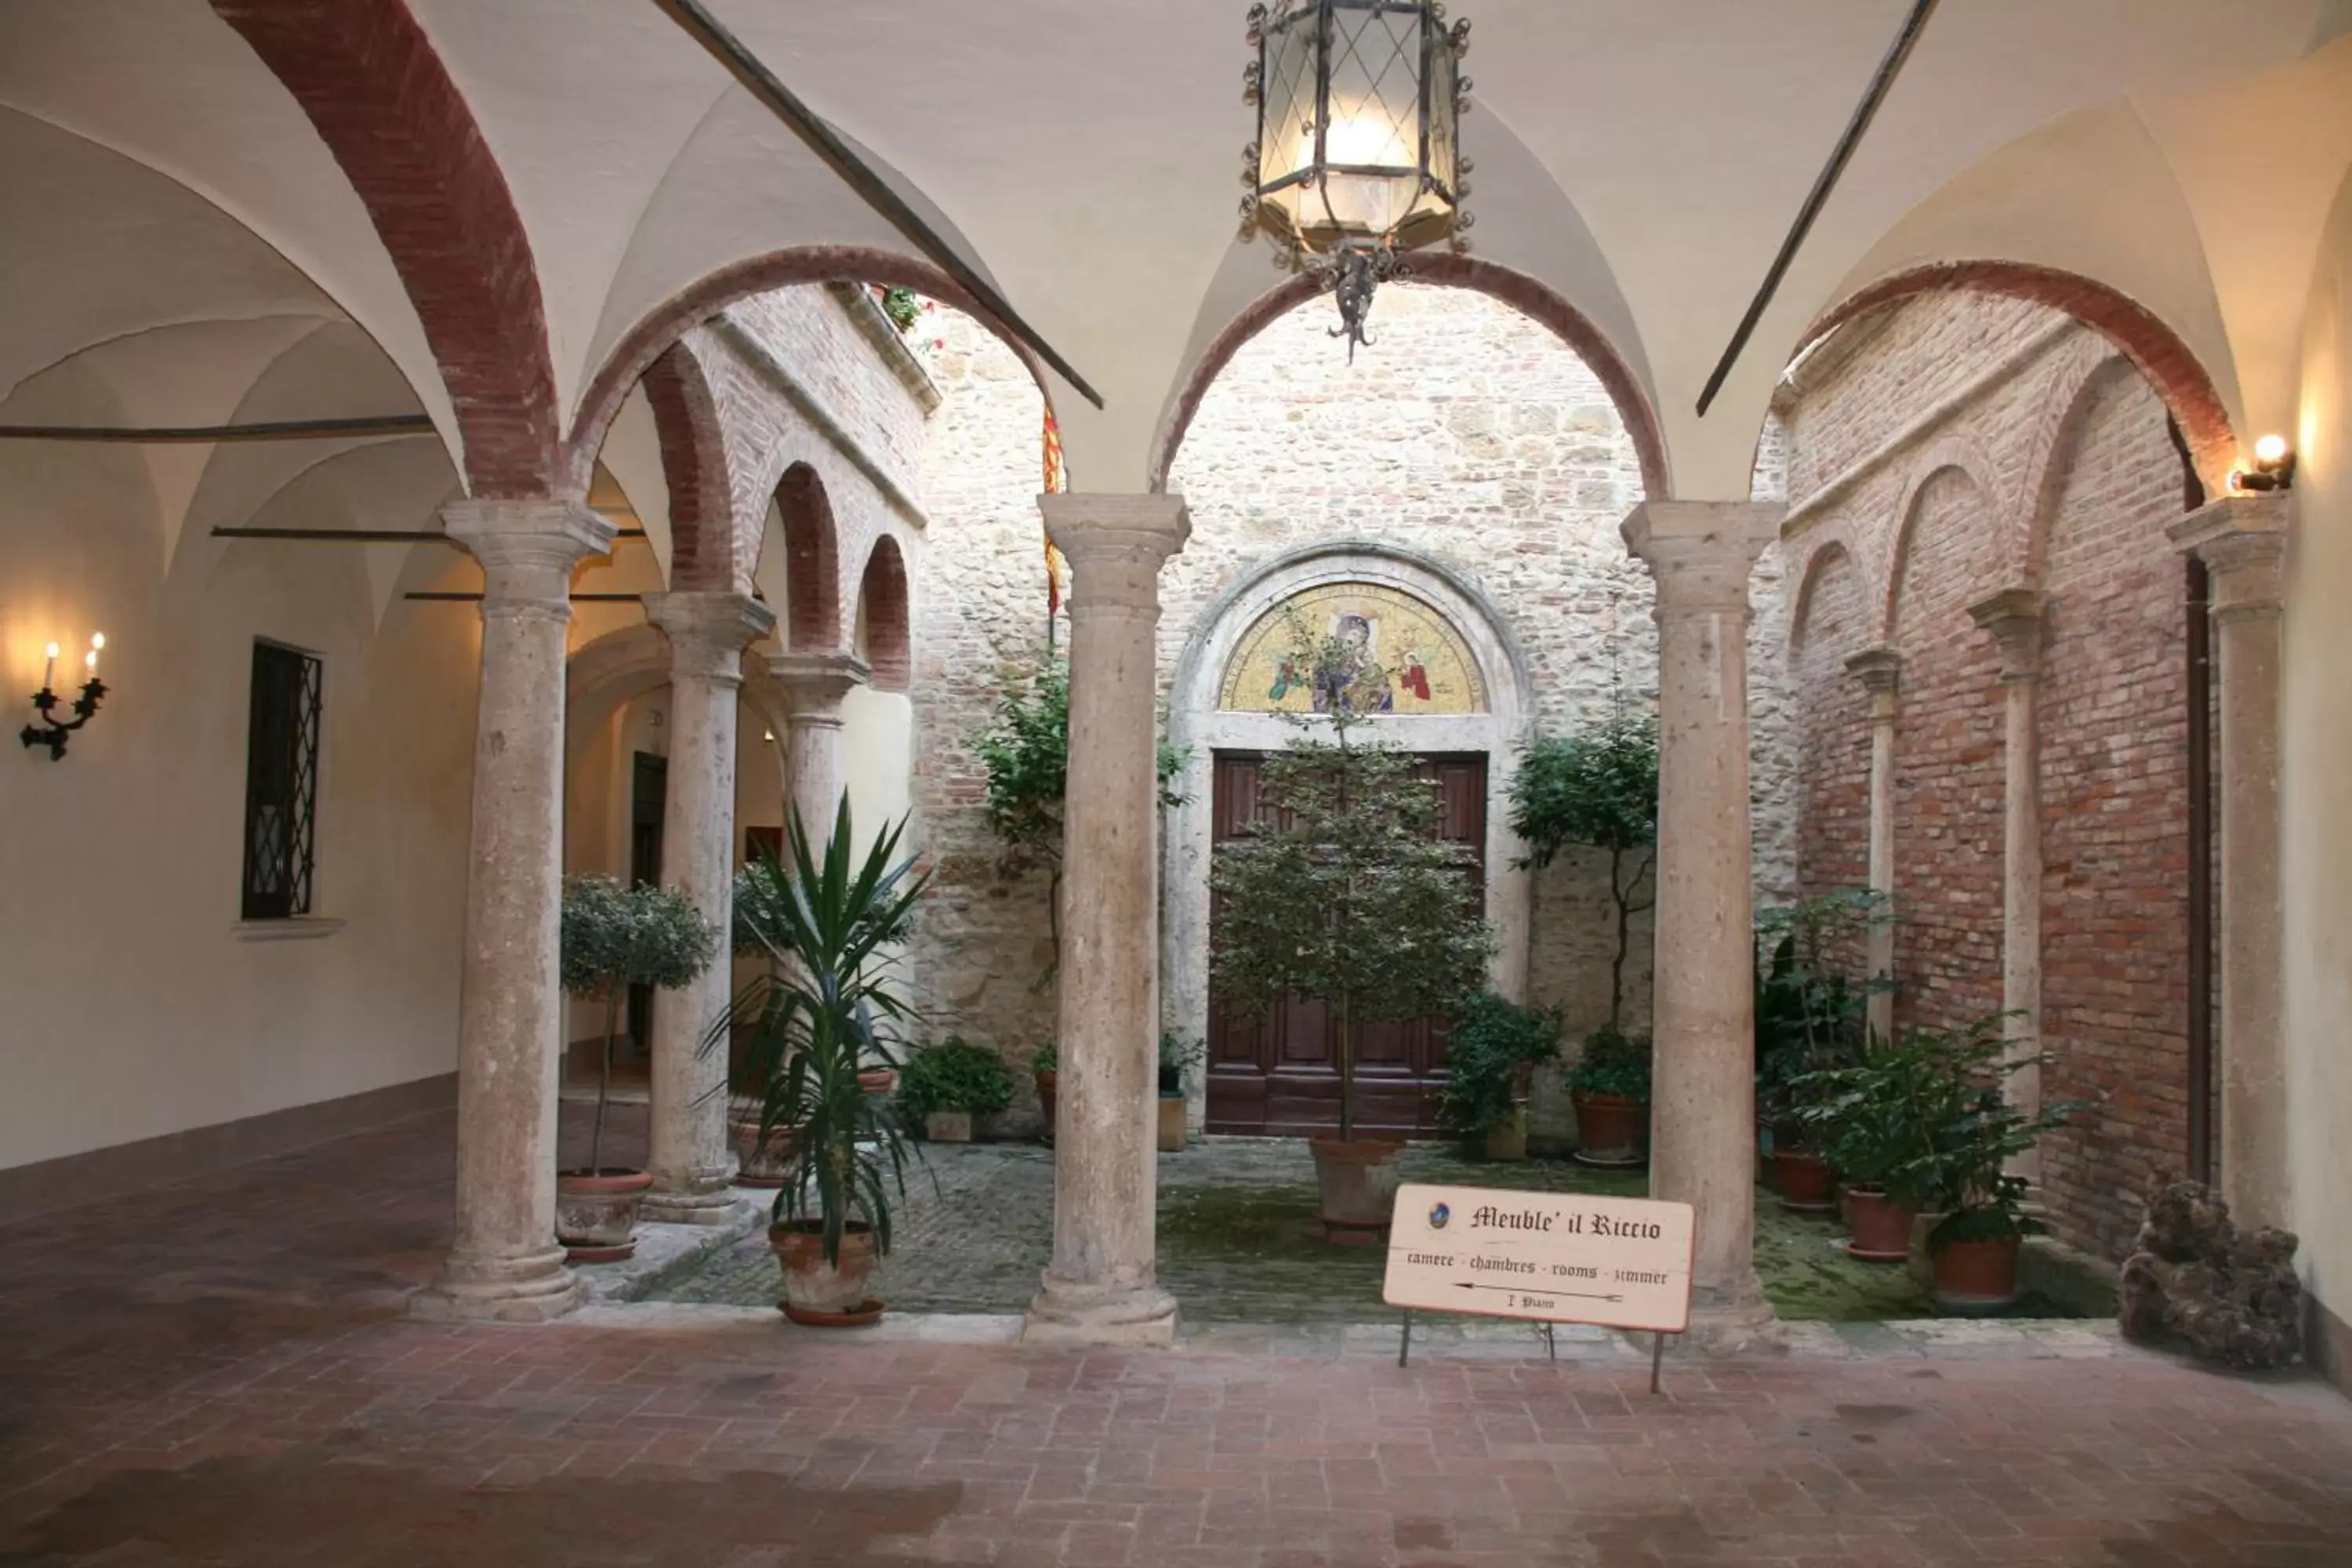 Inner courtyard view in Meublé il Riccio